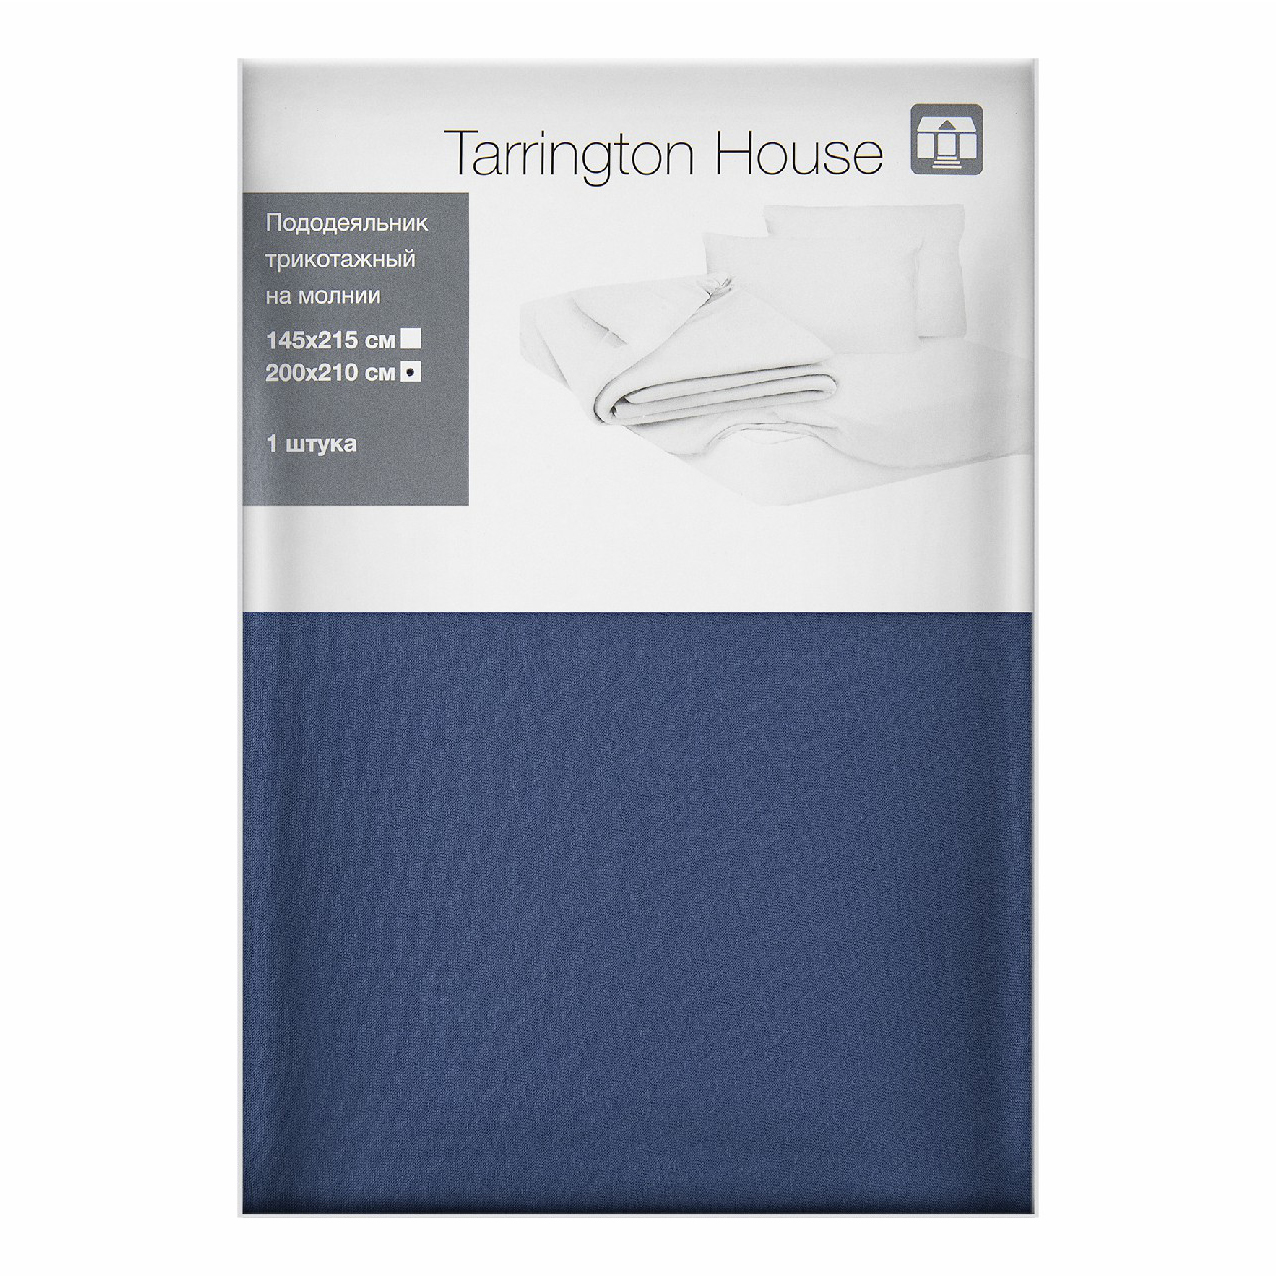 фото Пододеяльник tarrington house 200x210 см трикотаж синий